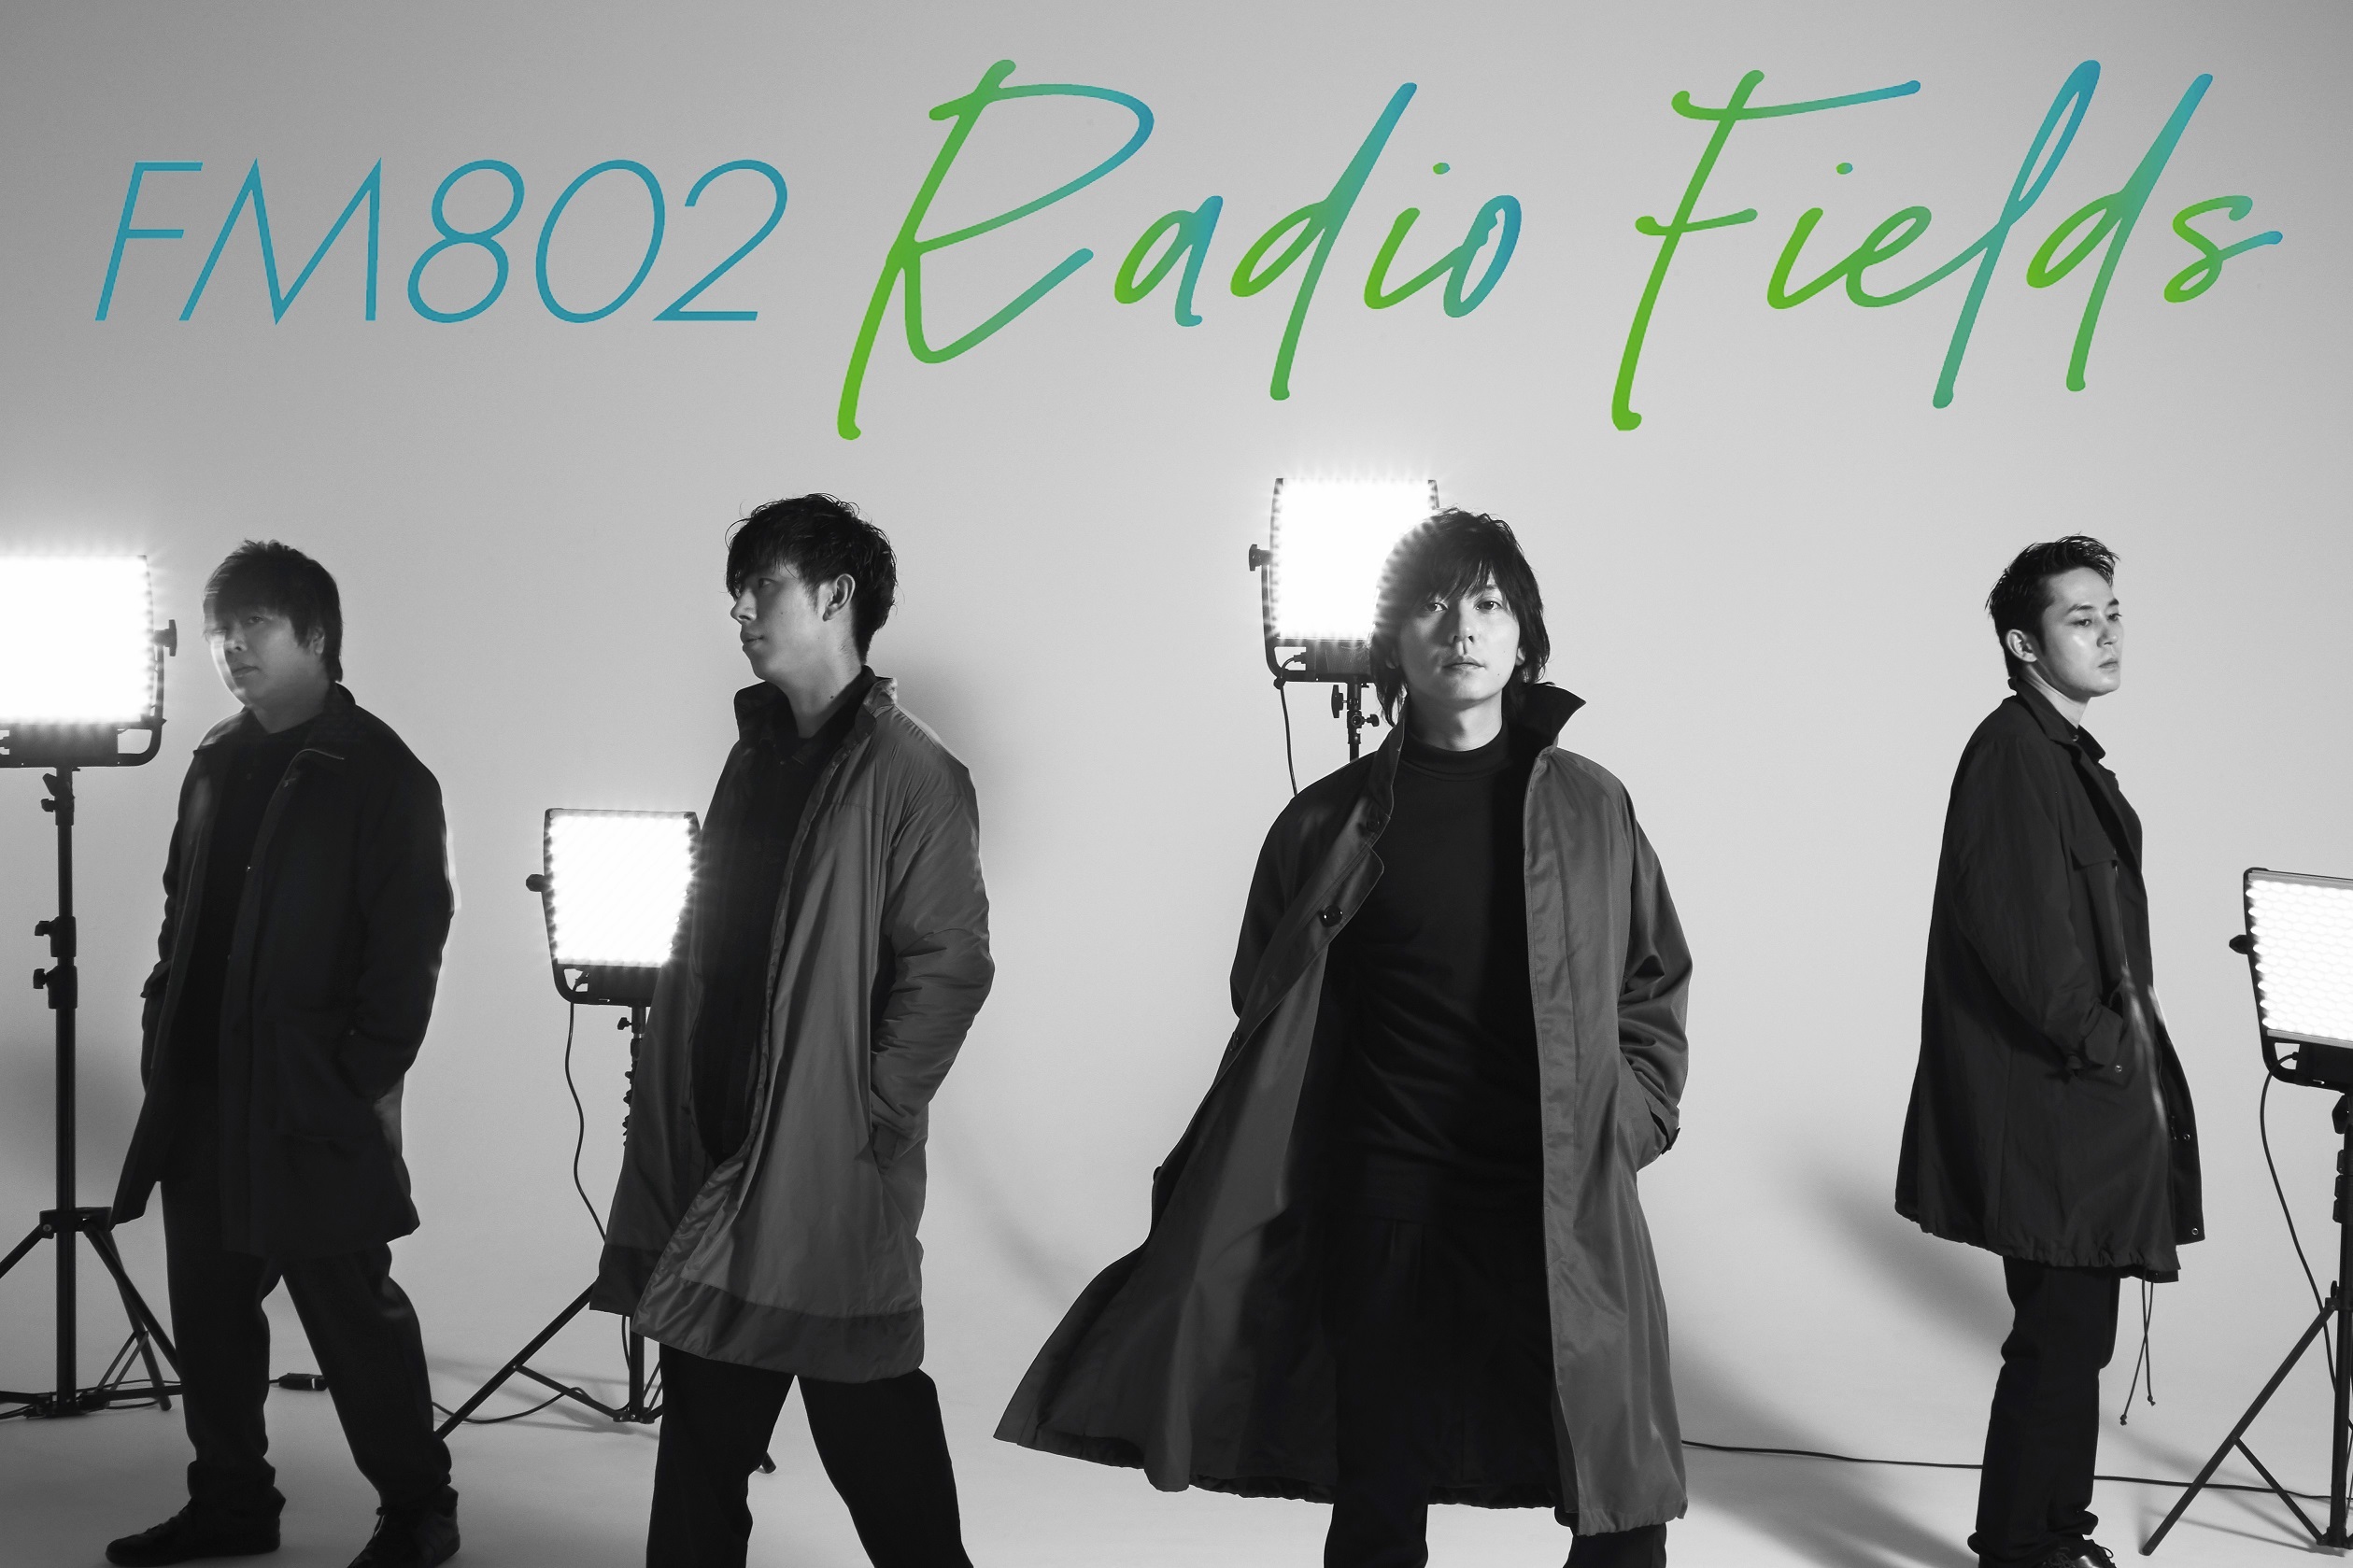 『FM802 Radio Fields』